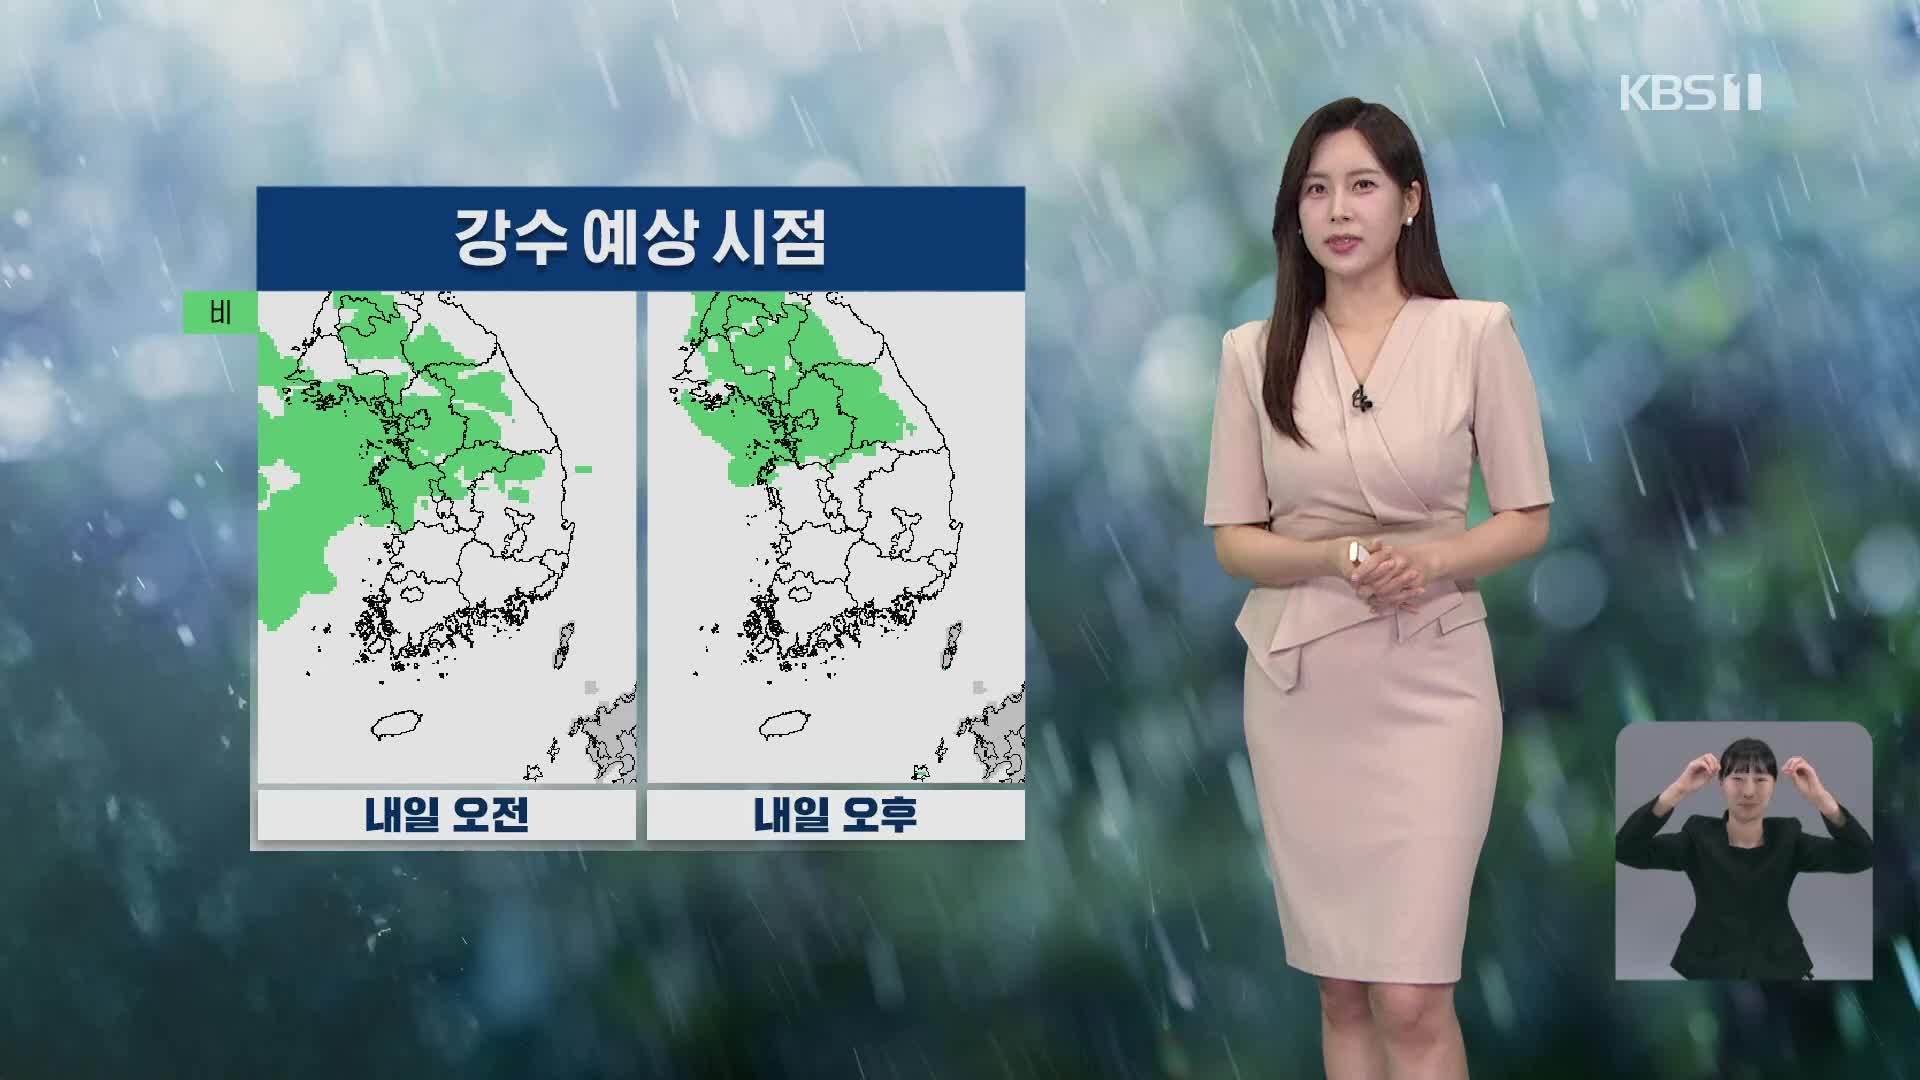 [7시뉴스 날씨] 내일 오전부터 수도권 강한 비…남부 곳곳에 폭염경보